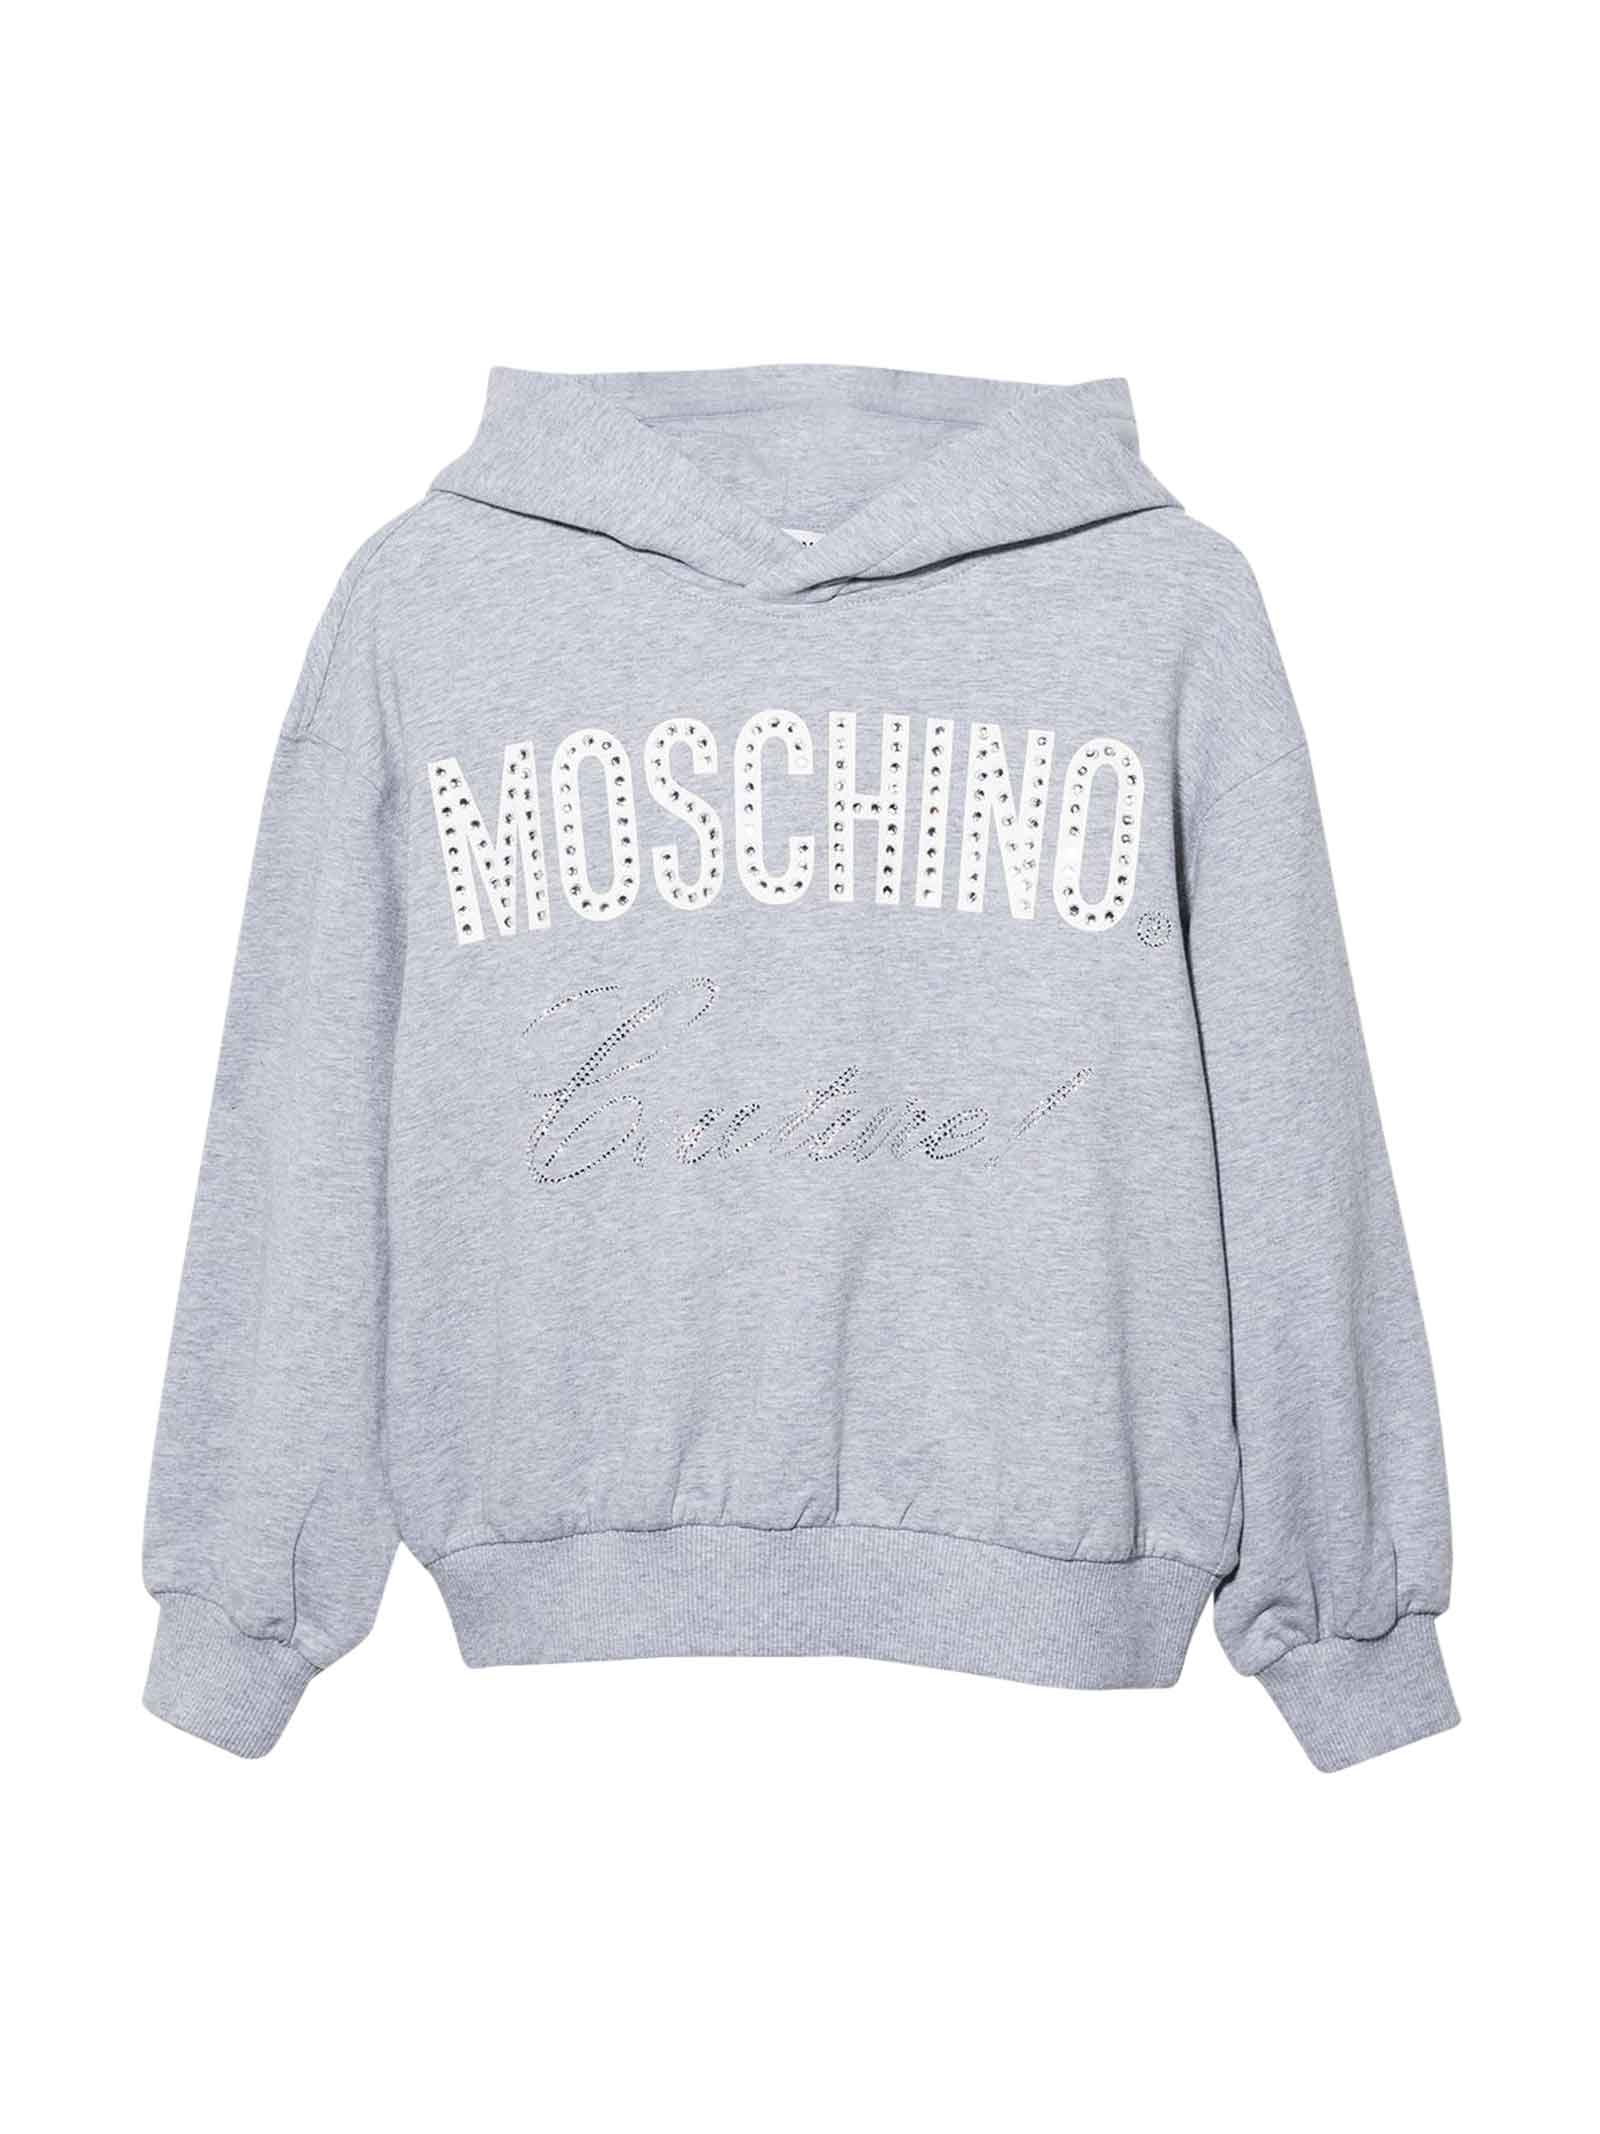 Moschino Unisex Gray Sweatshirt